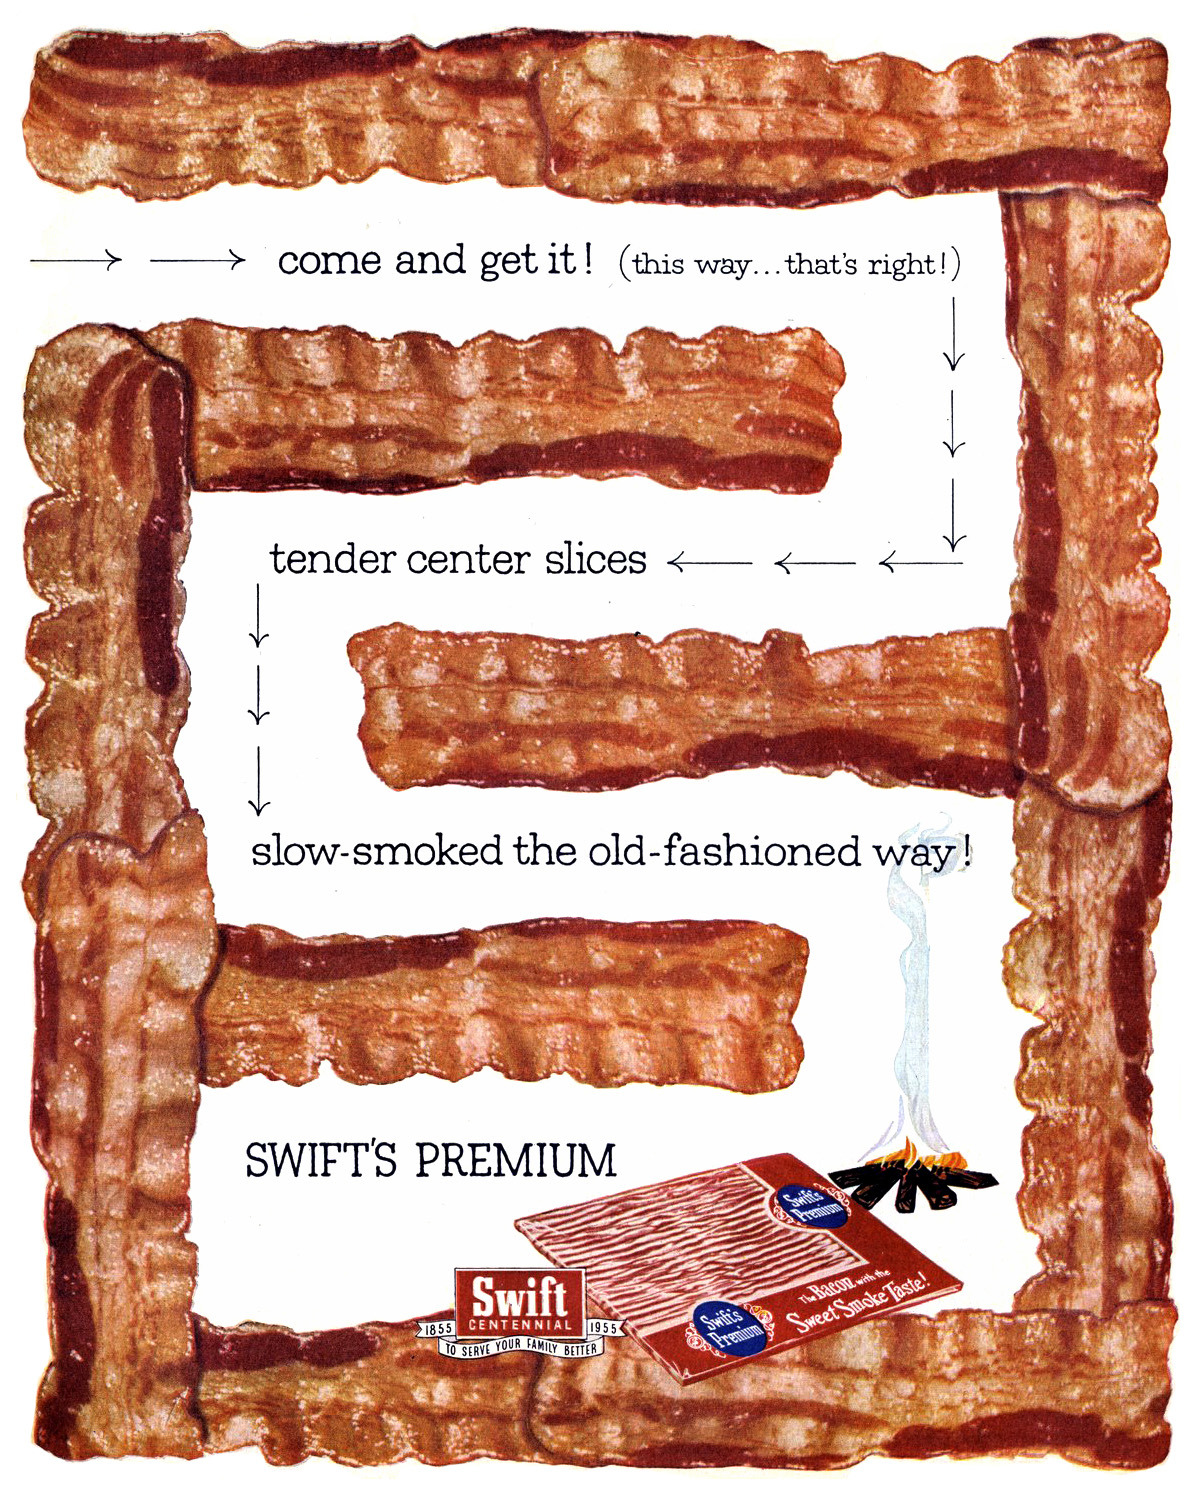 Swift's Premium Bacon - 1955